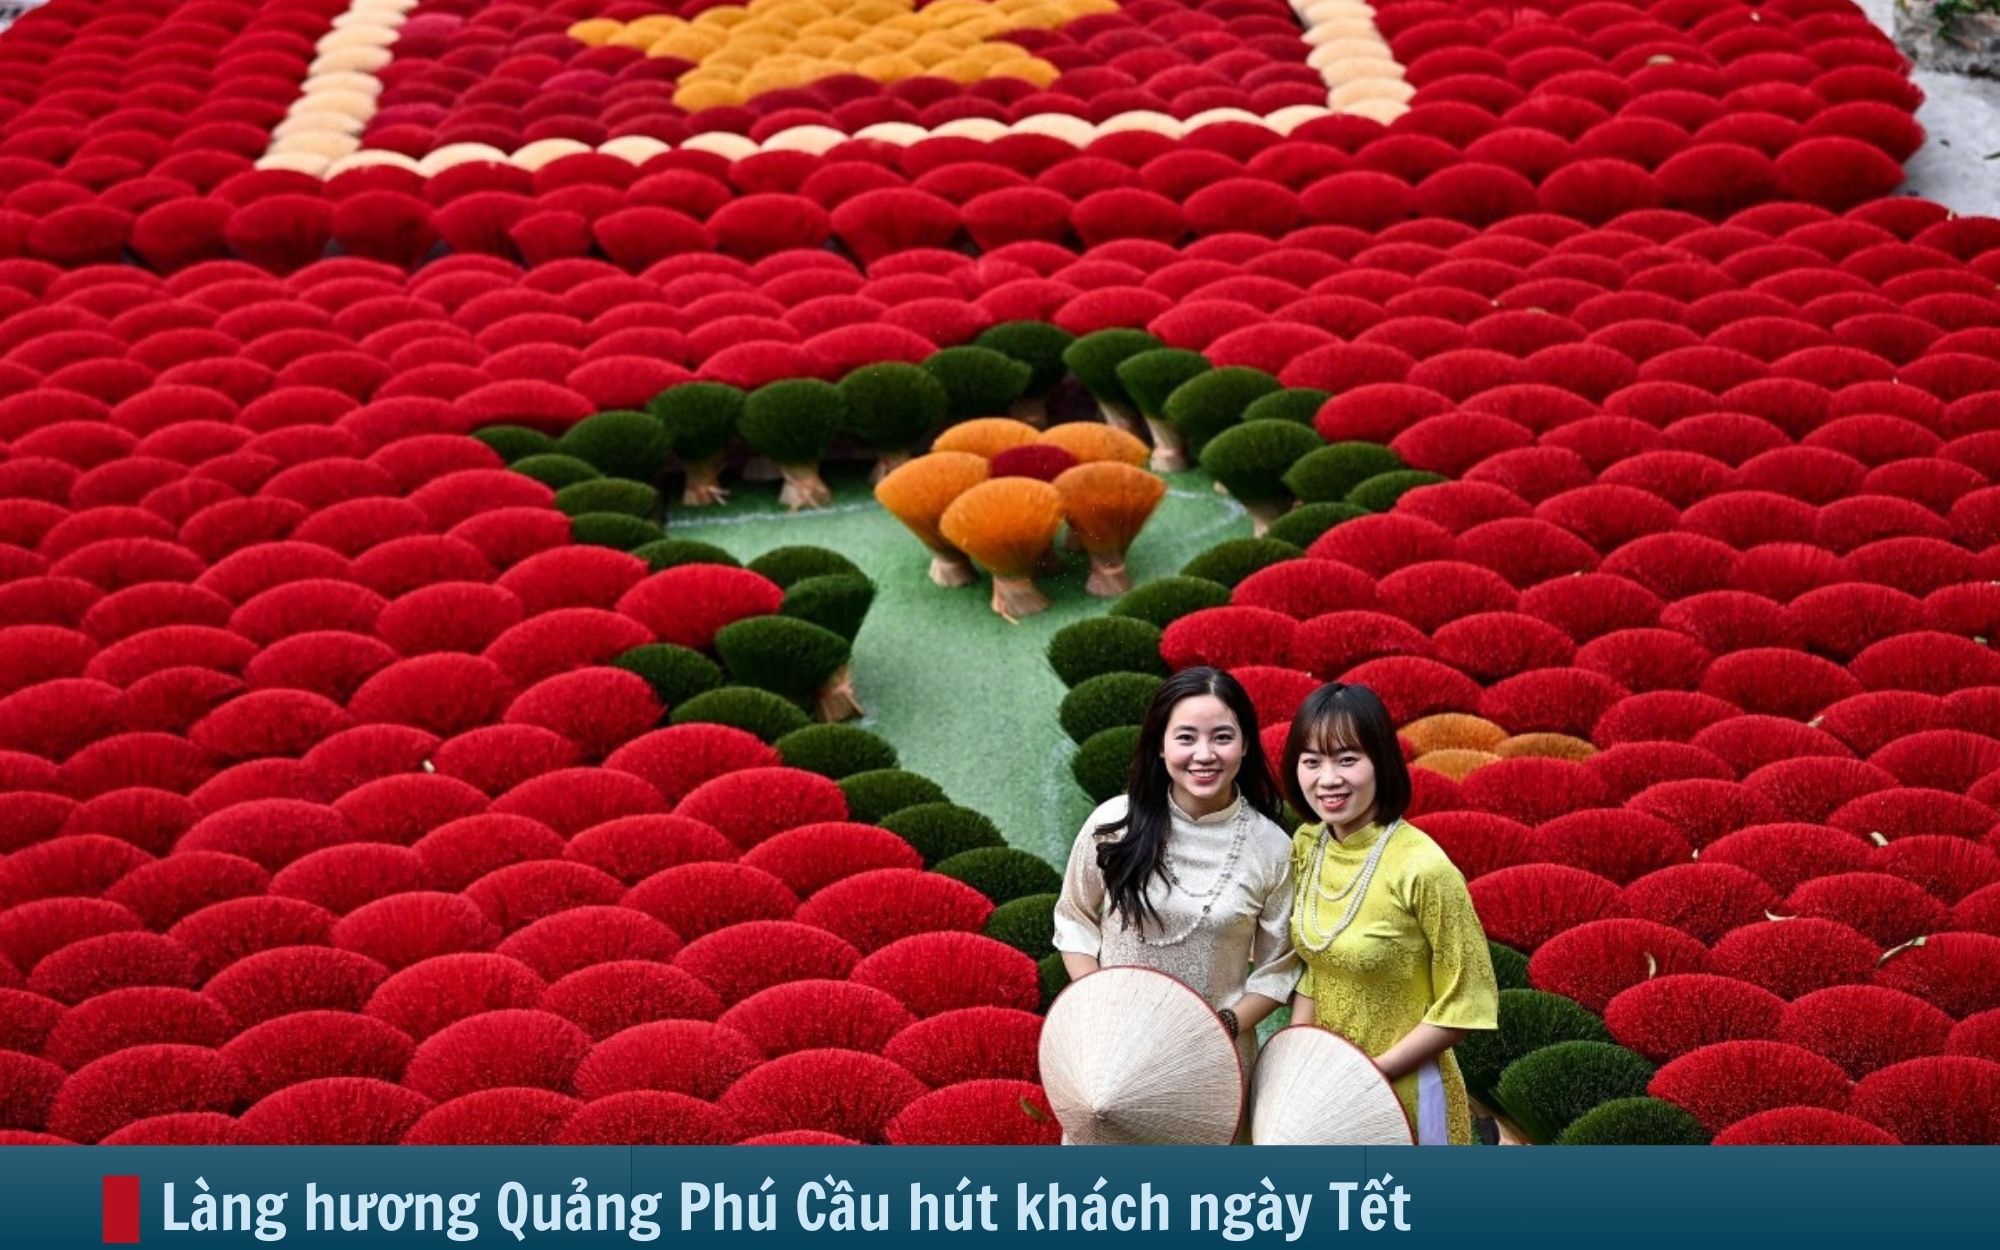 Hình ảnh báo chí 24h: Làng hương Quảng Phú Cầu tuyệt đẹp ngày Tết